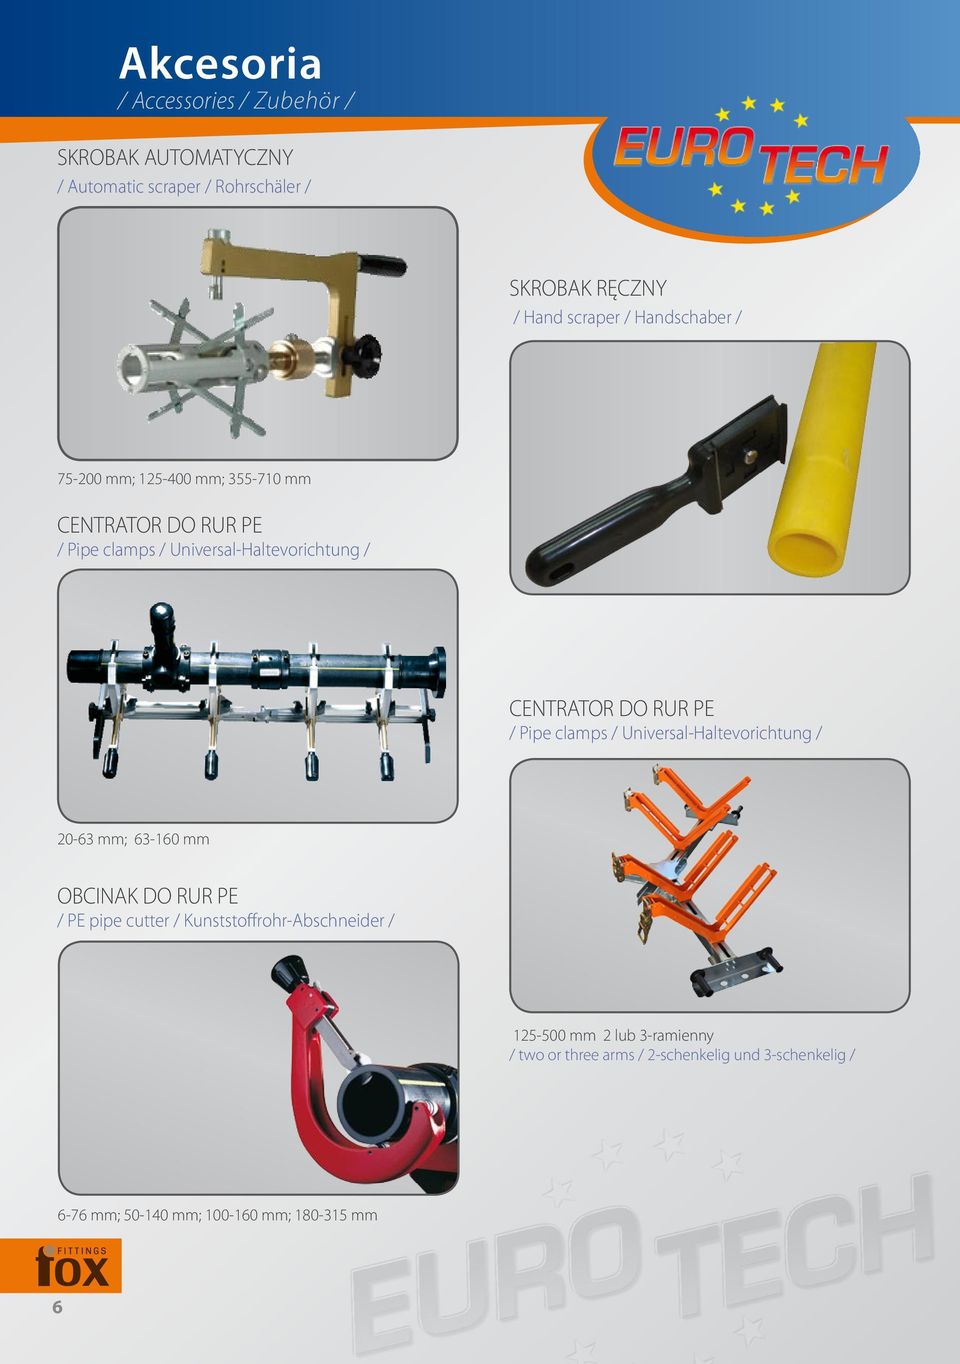 PE / Pipe clamps / Universal-Haltevorichtung / 20-63 mm; 63-160 mm OBCINAK DO RUR PE / PE pipe cutter /